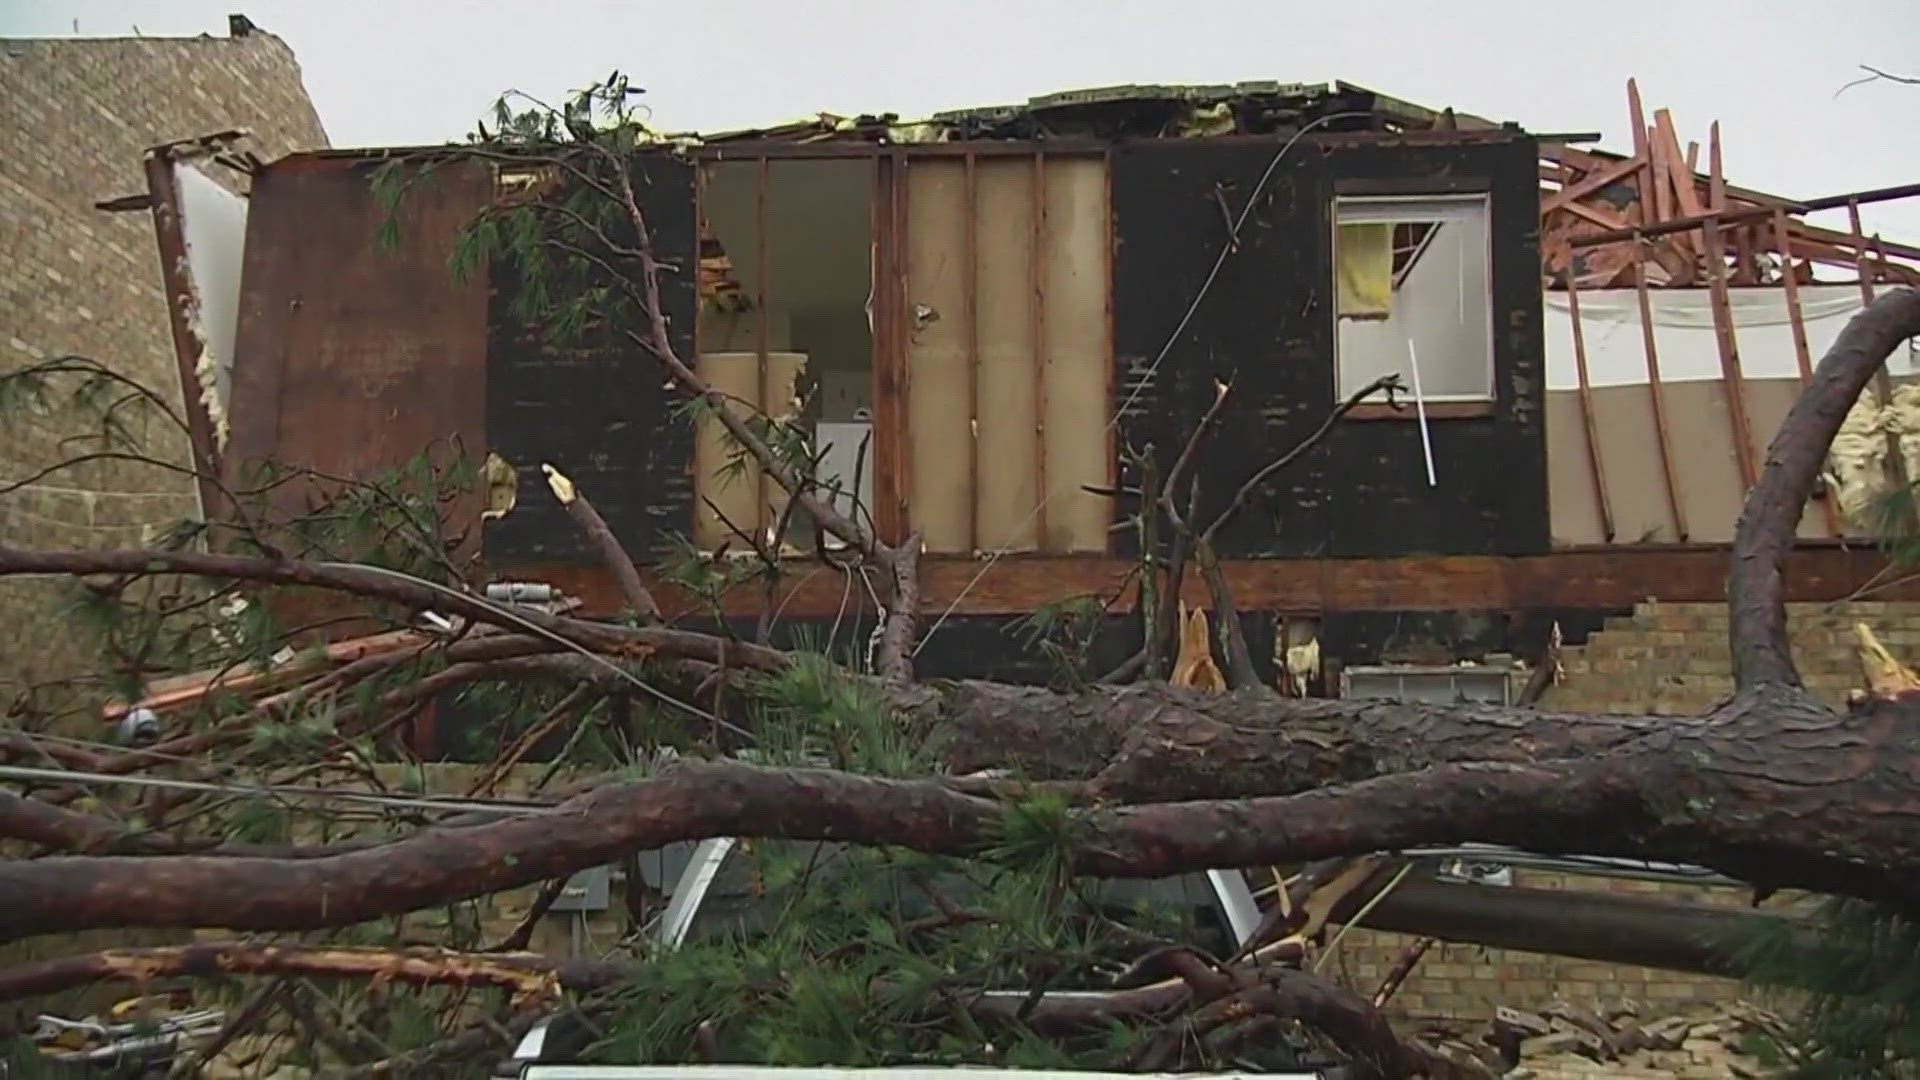 Louisiana has been hit by a tornado and heavy rain.